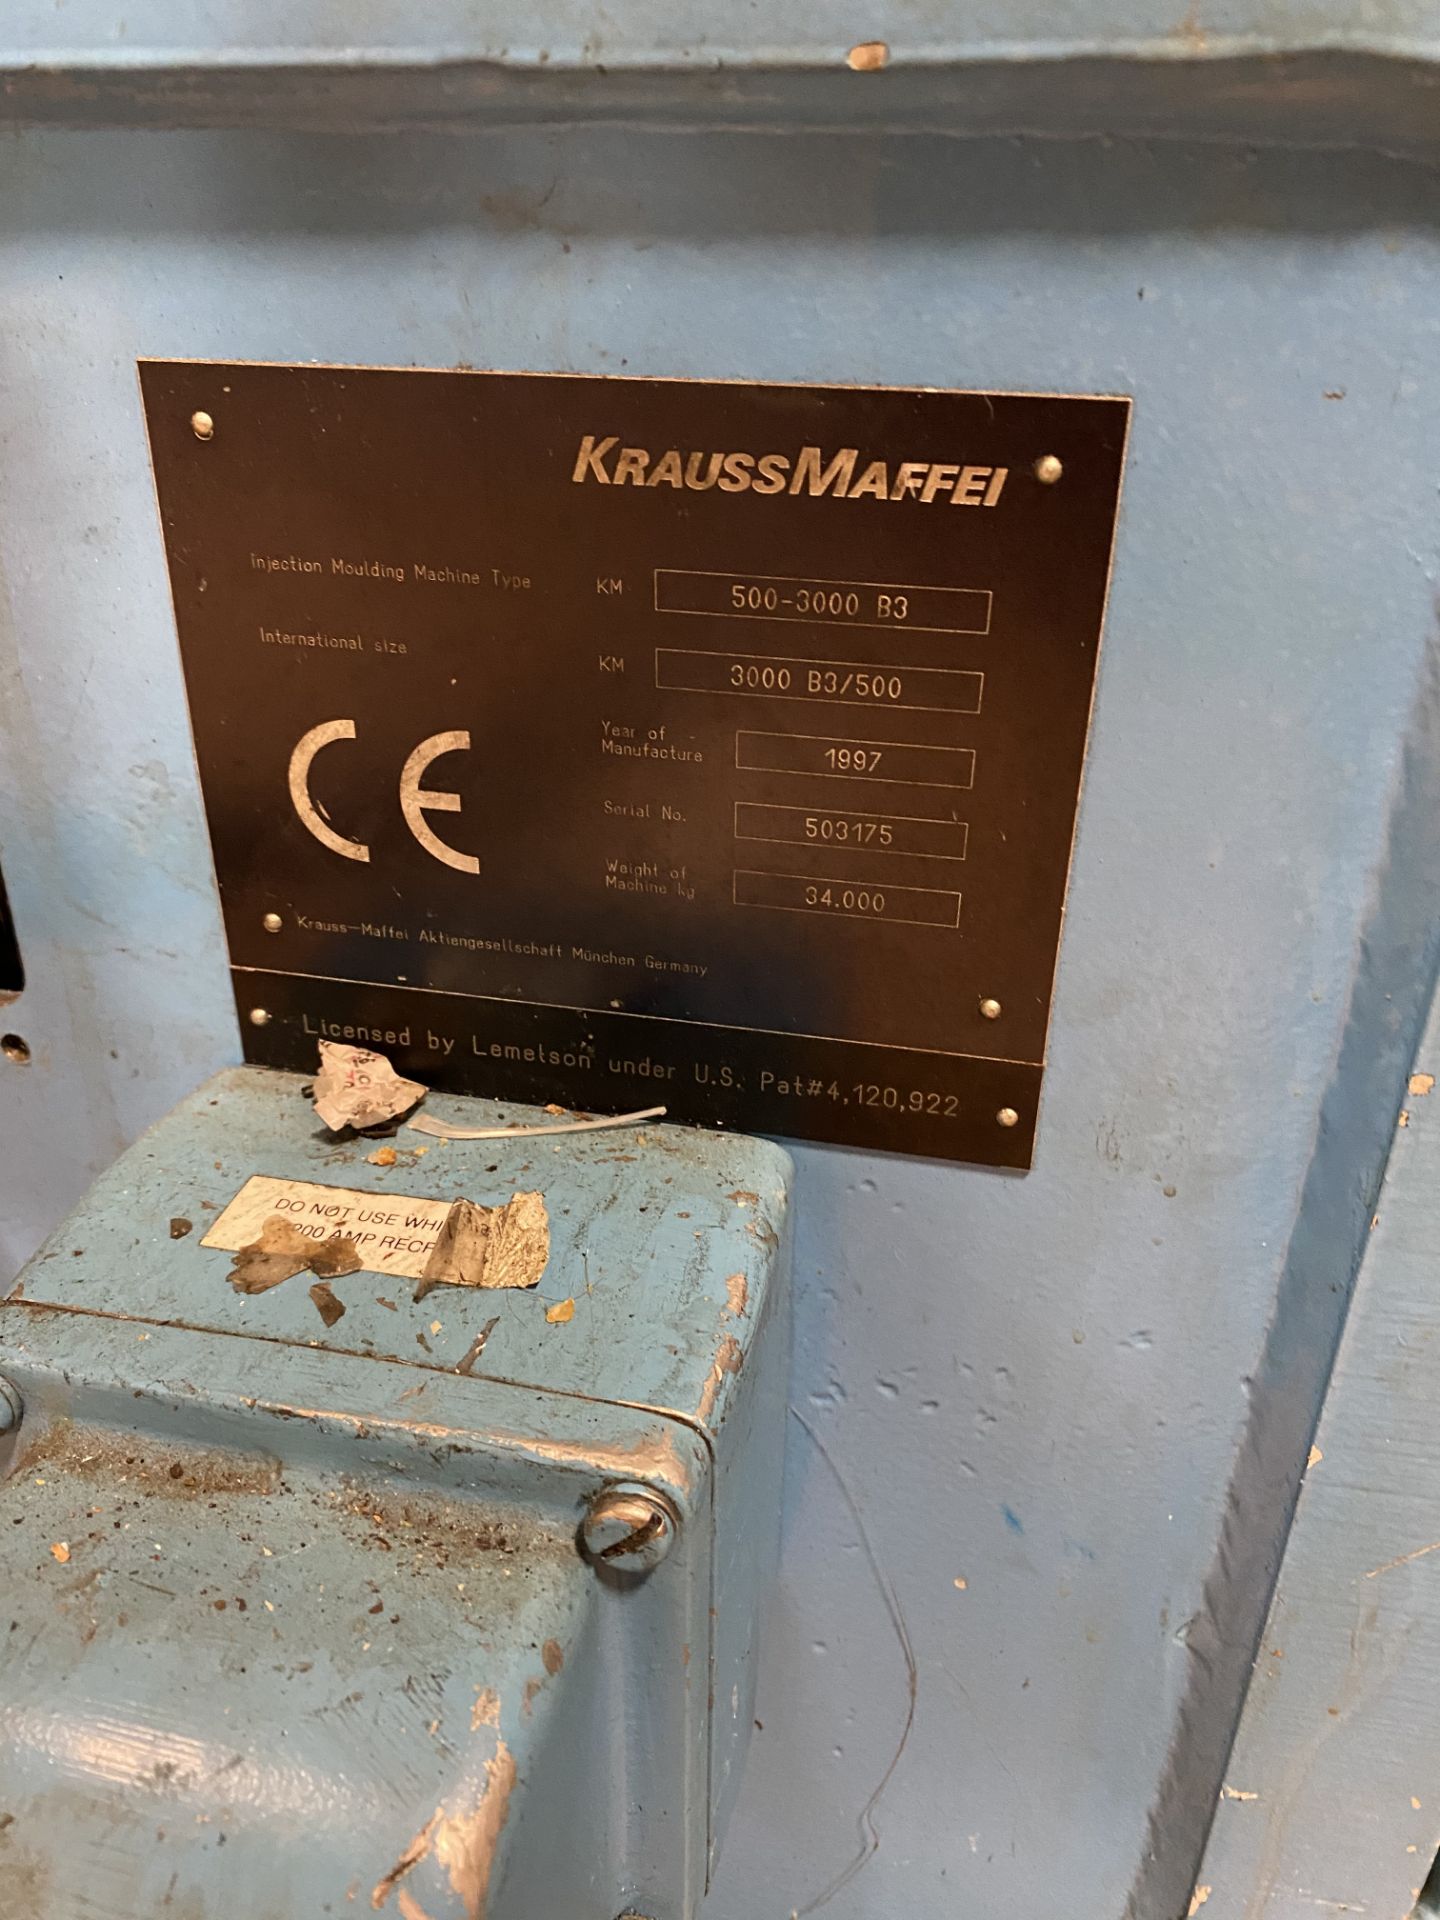 Krauss Maffei 550 Ton Injection Molding Machine 500-3000 B3 1997 - Image 10 of 11